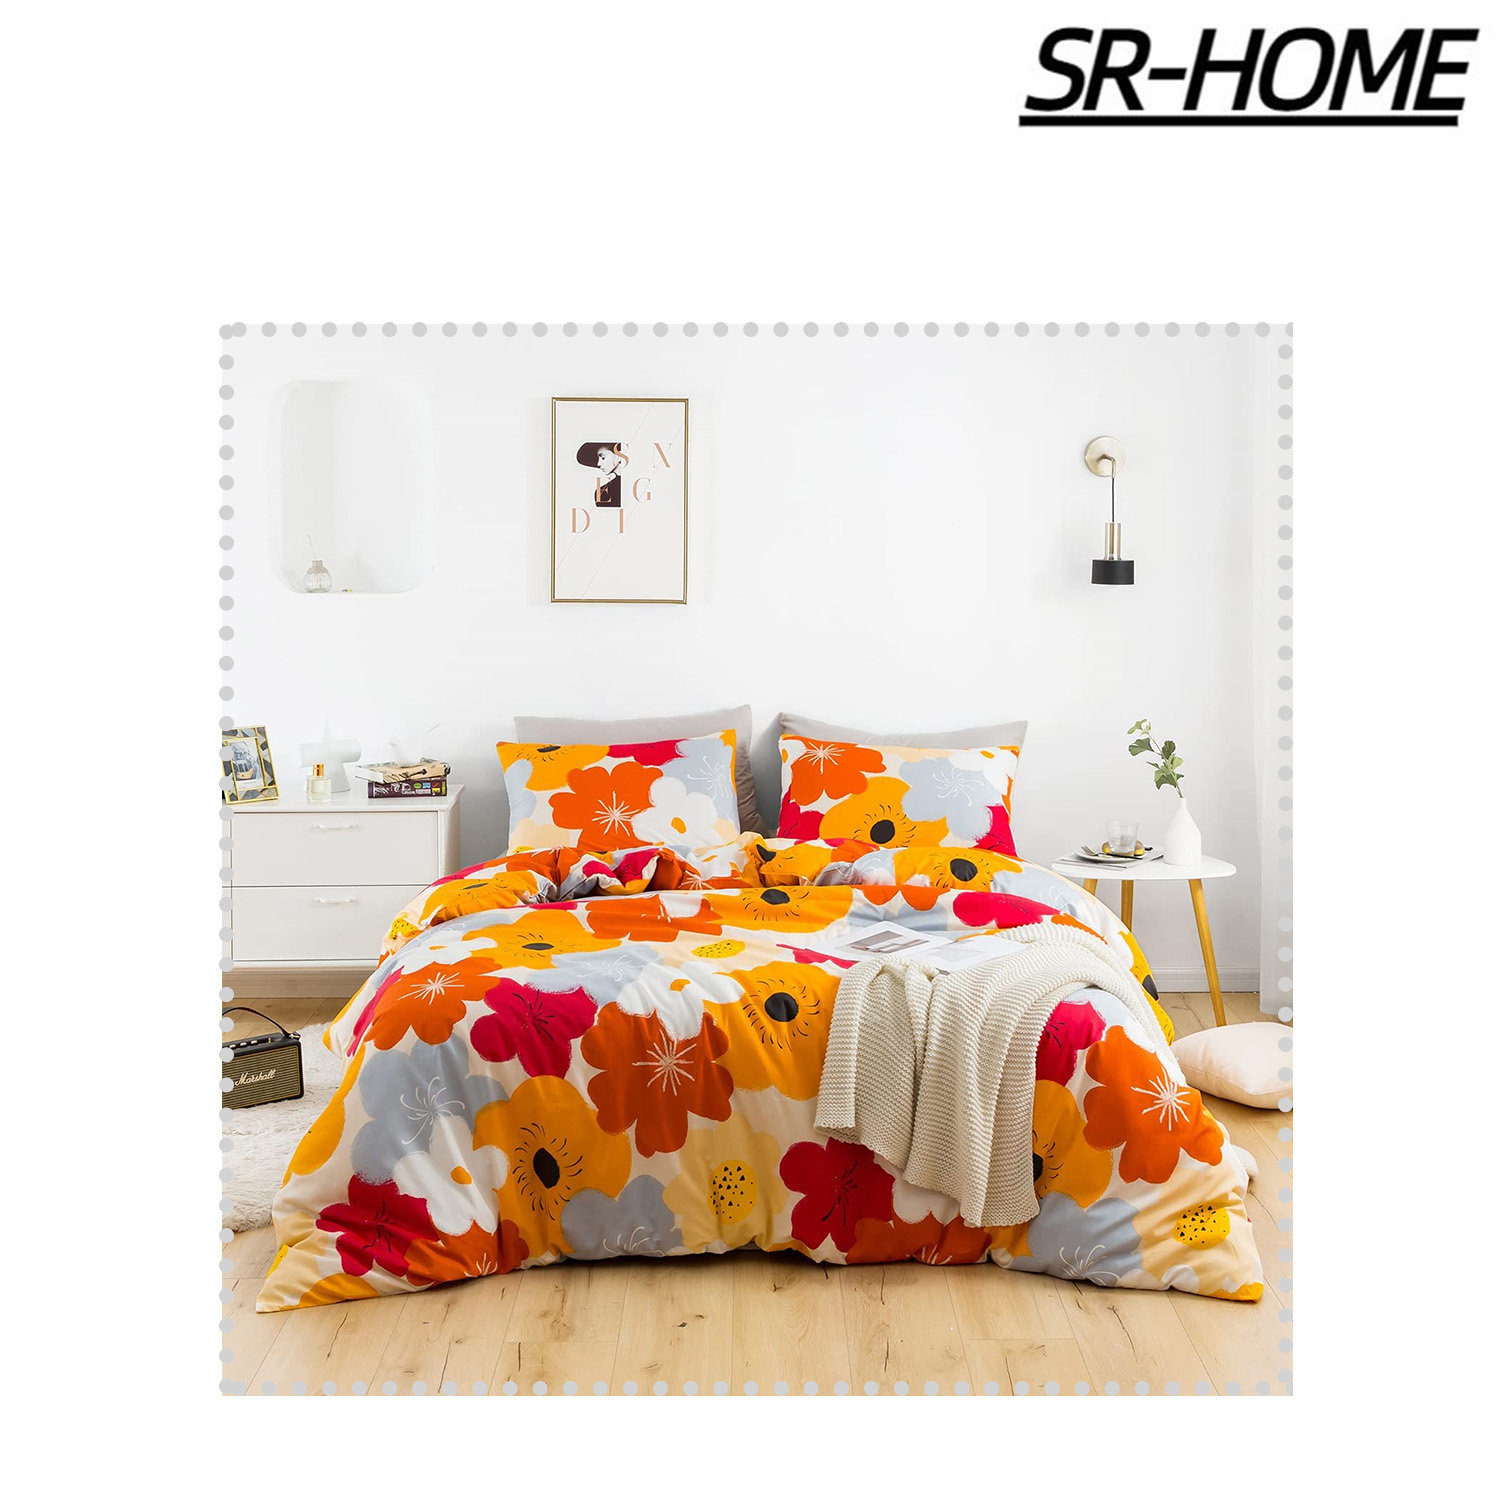 SR-HOME Cotton Floral Duvet Cover Set - Wayfair Canada